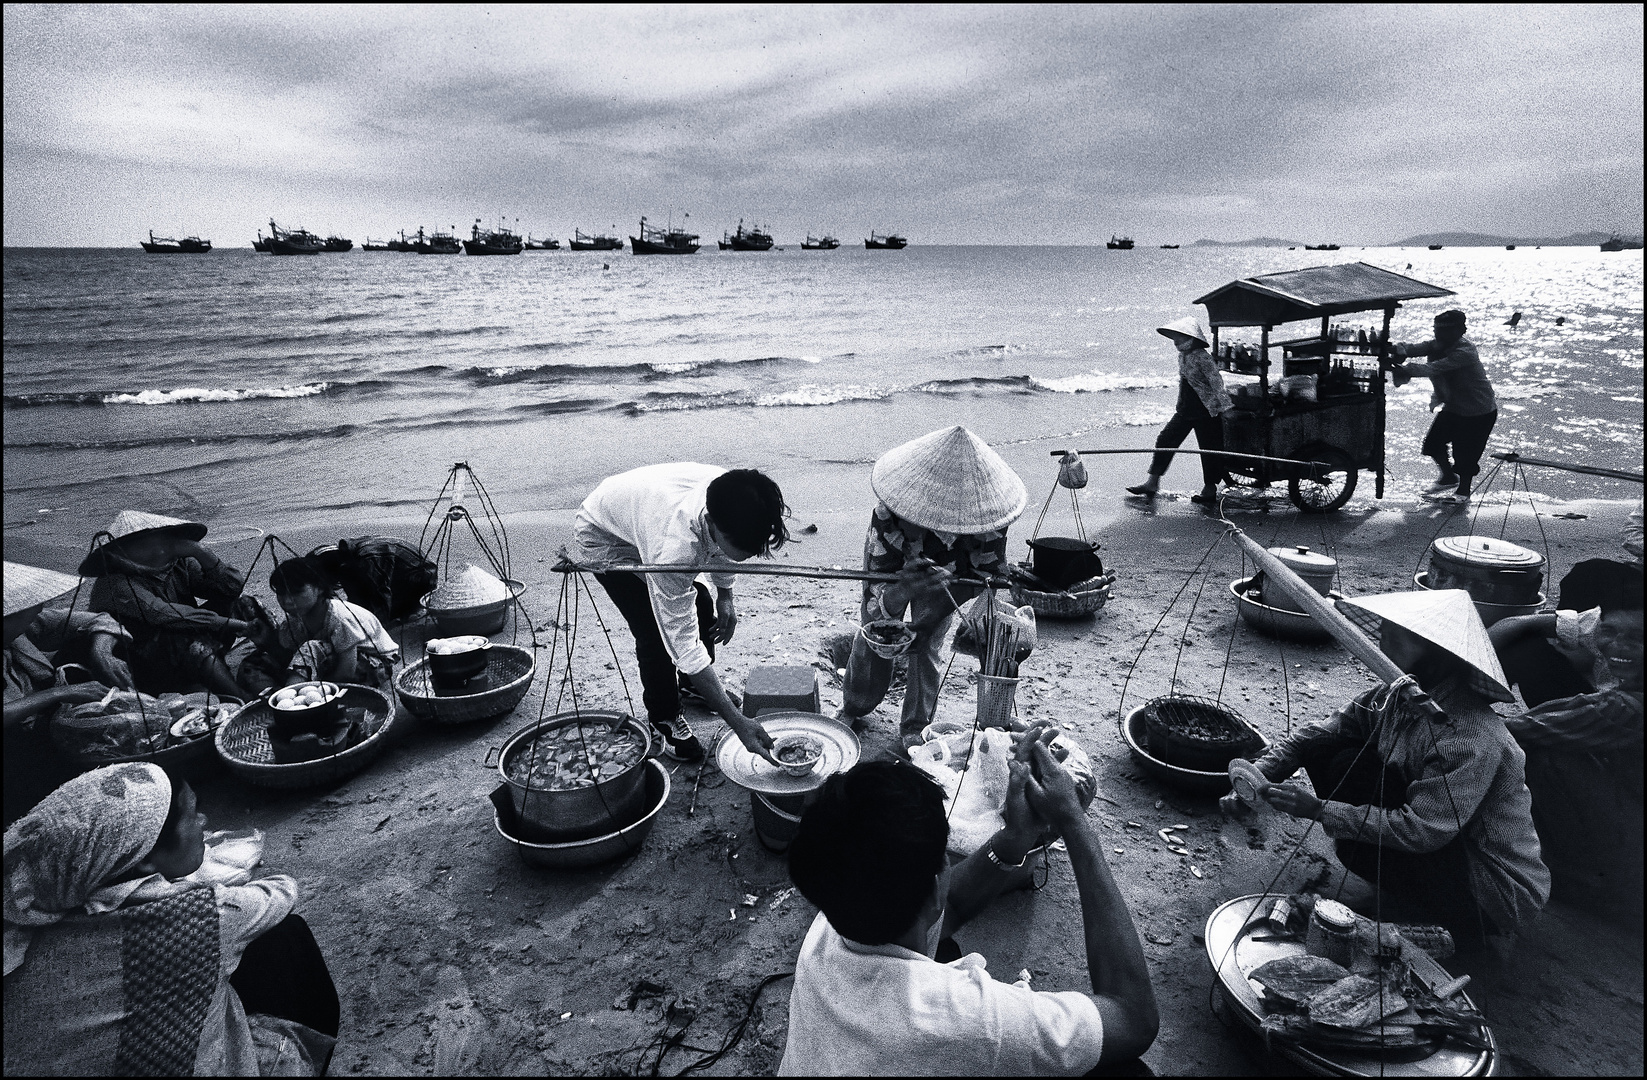 On the beach in Vietnam: Getränkewagen